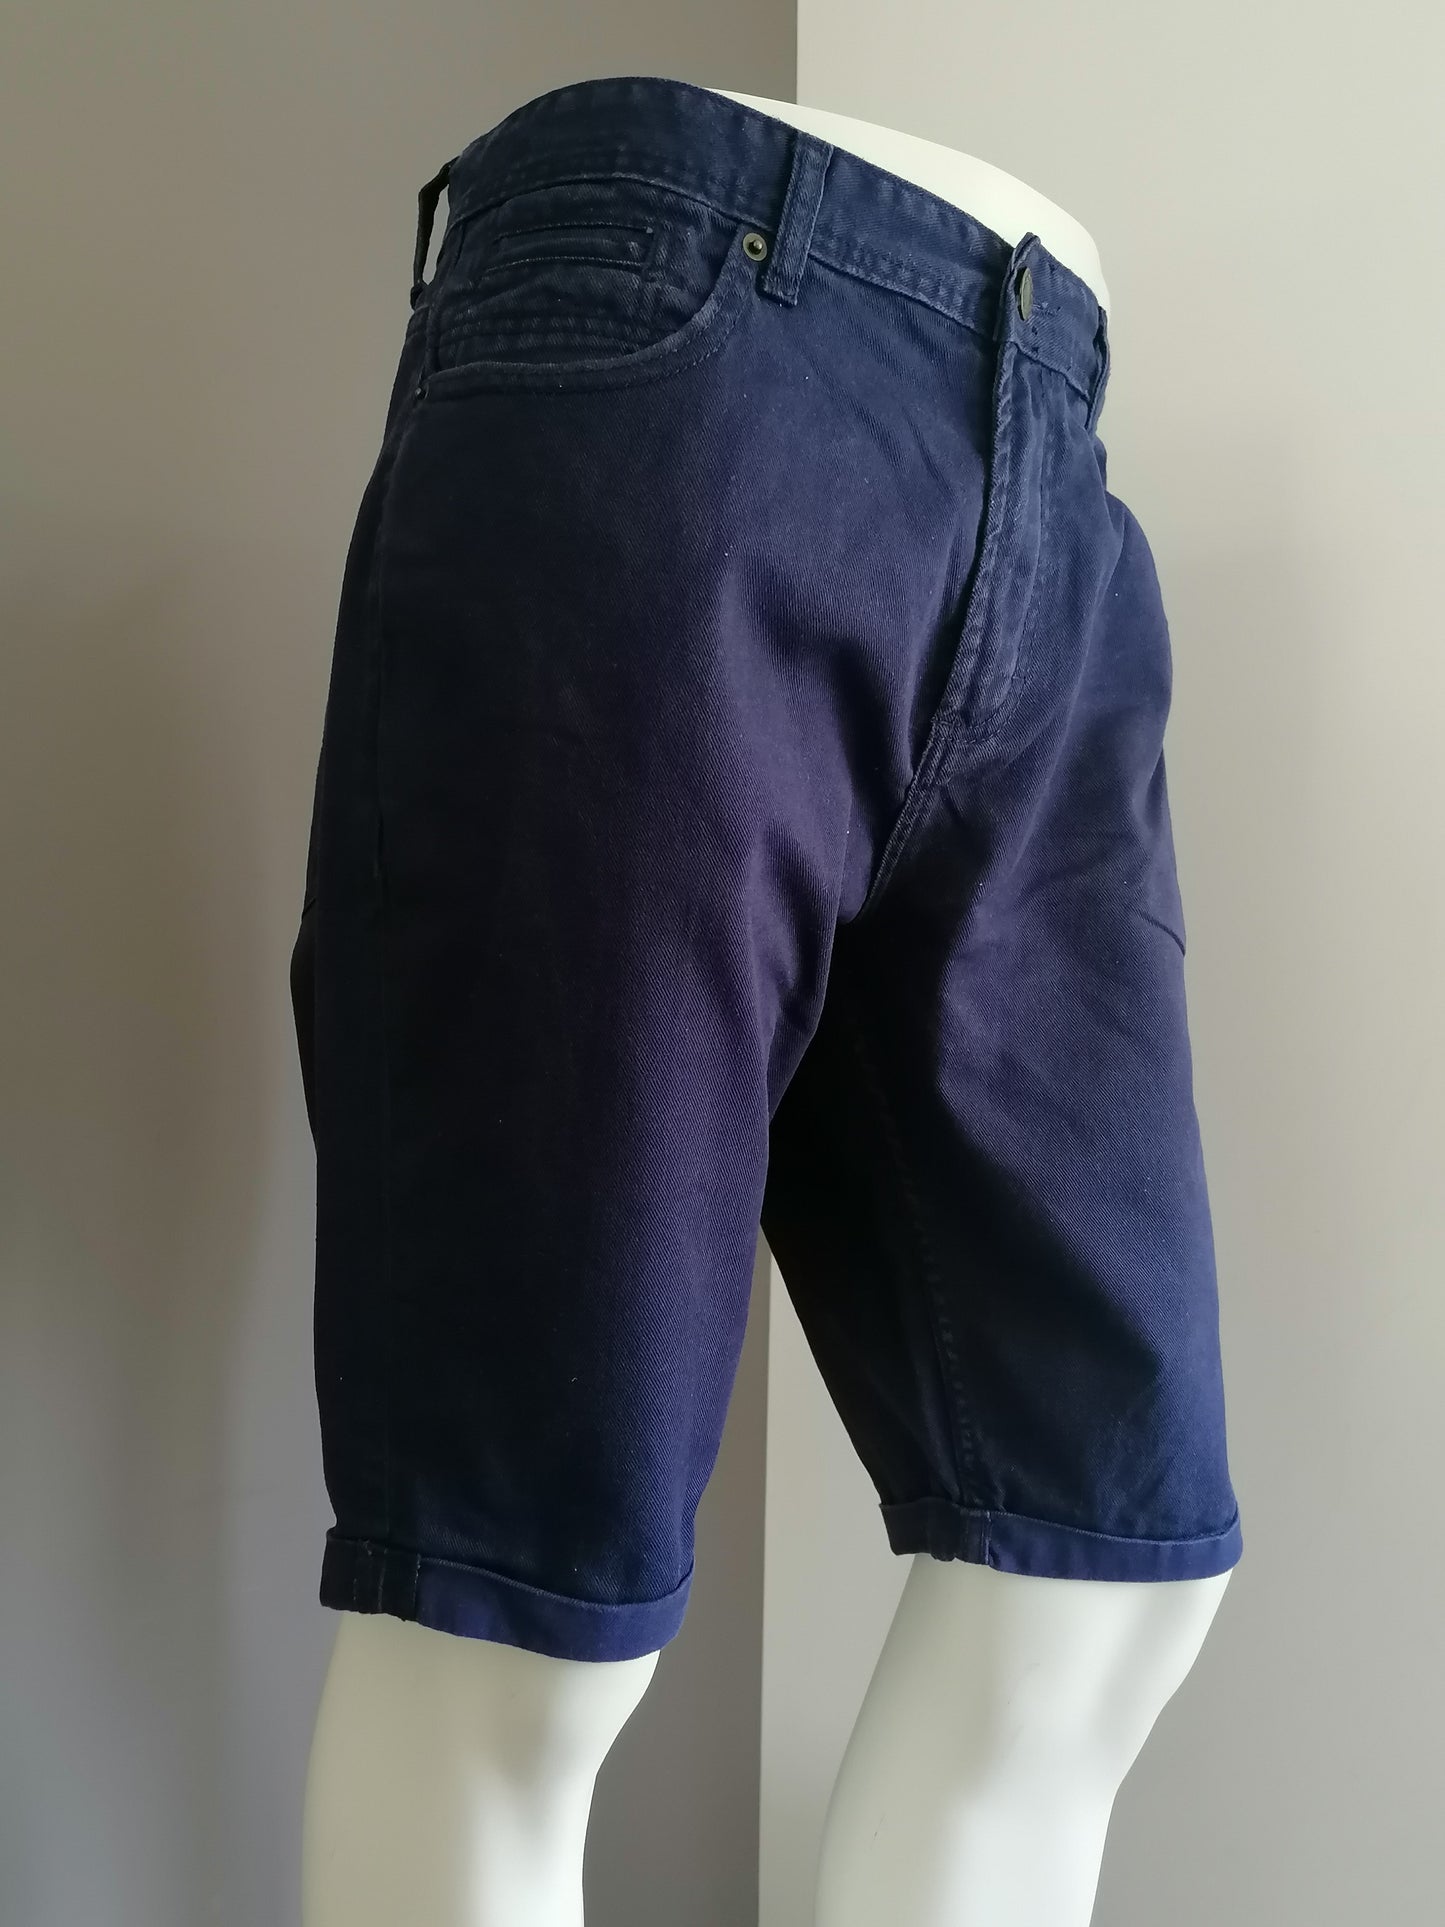 Pantalones cortos de mezclilla. Color azul oscuro. Tamaño W38.